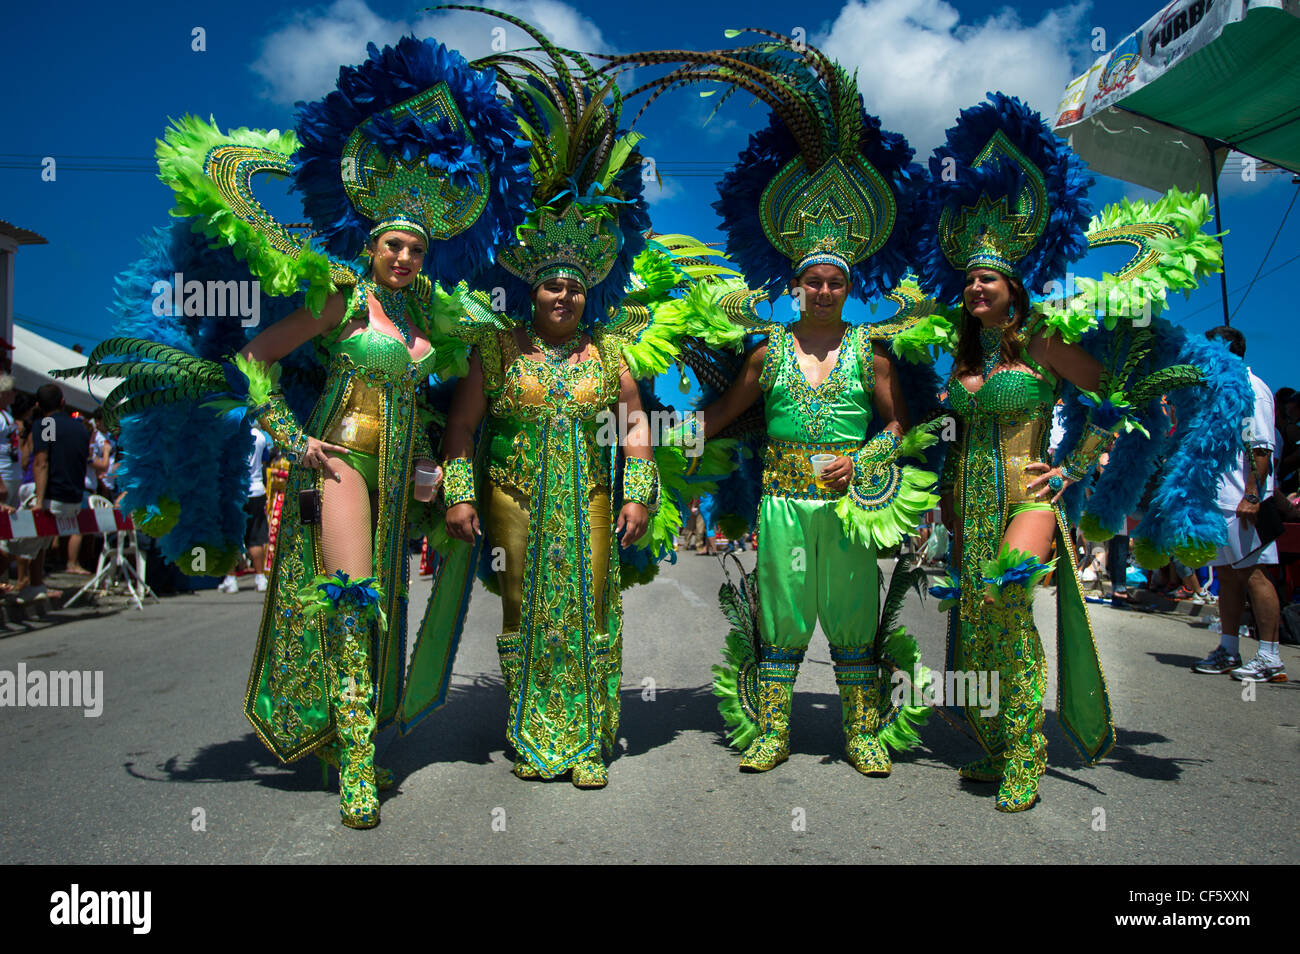 People celebrating Carnival in Aruba Stock Photo